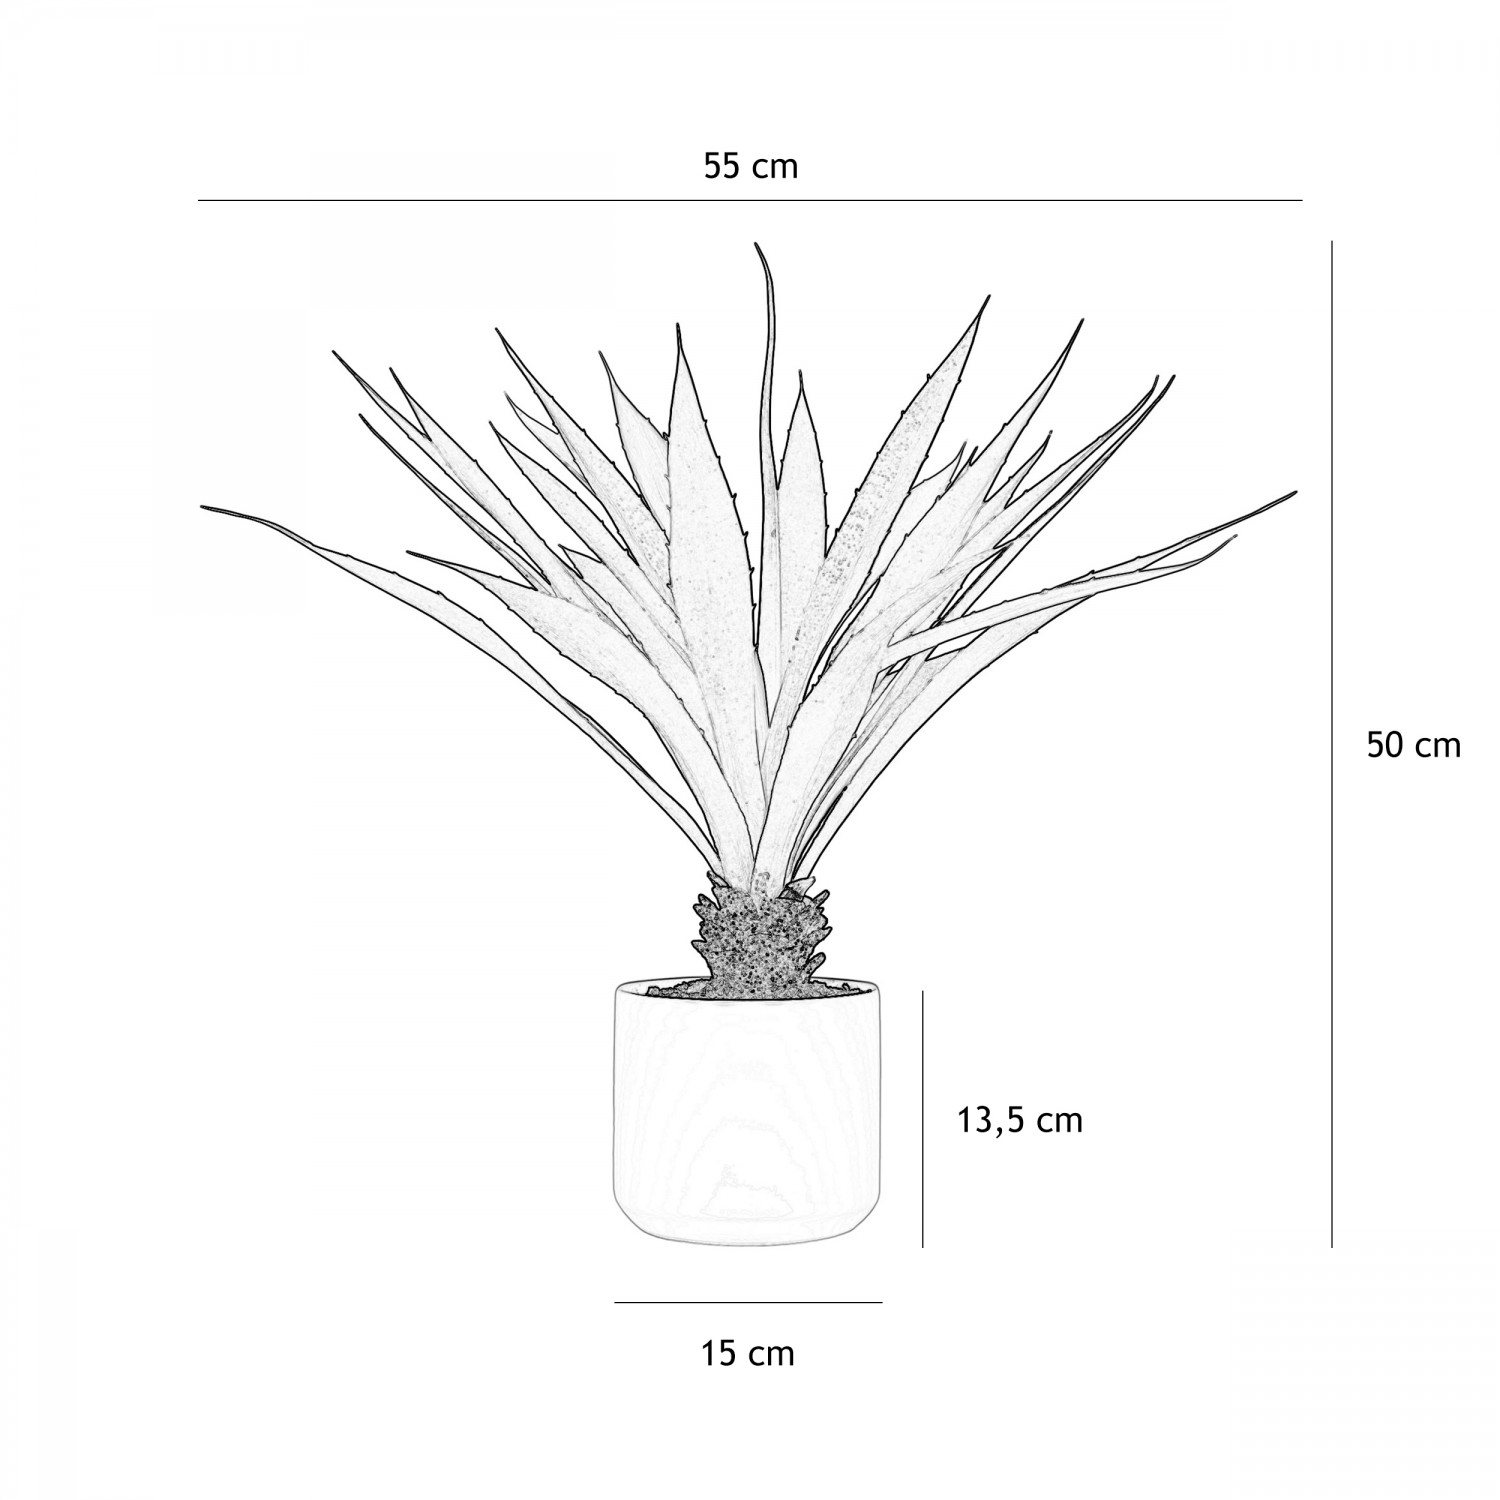 Aloe vera artificiel 55 cm graphique avec les dimensions